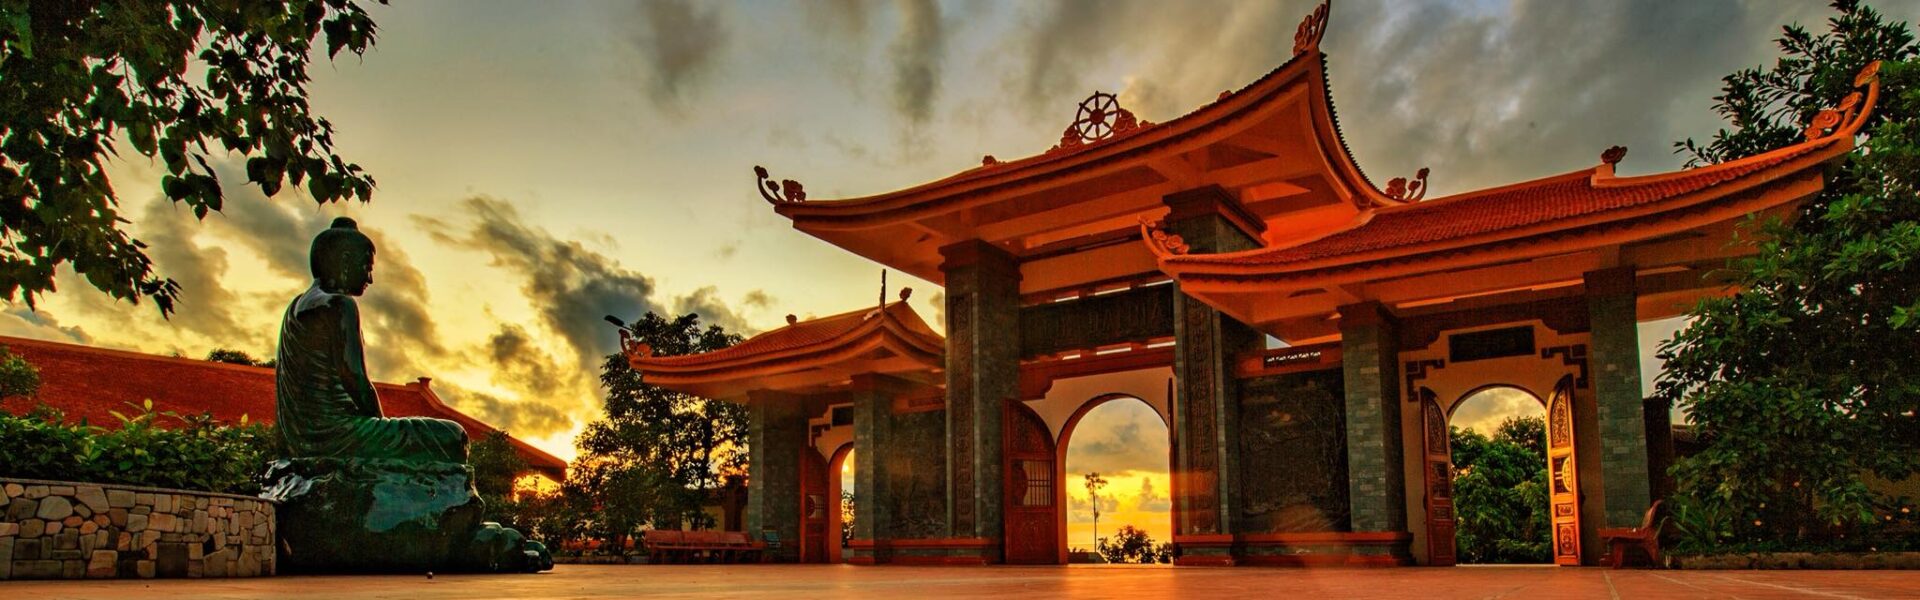 Tổng hợp 10 ngôi chùa Phú Quốc nổi tiếng tâm linh - Ảnh đại diện